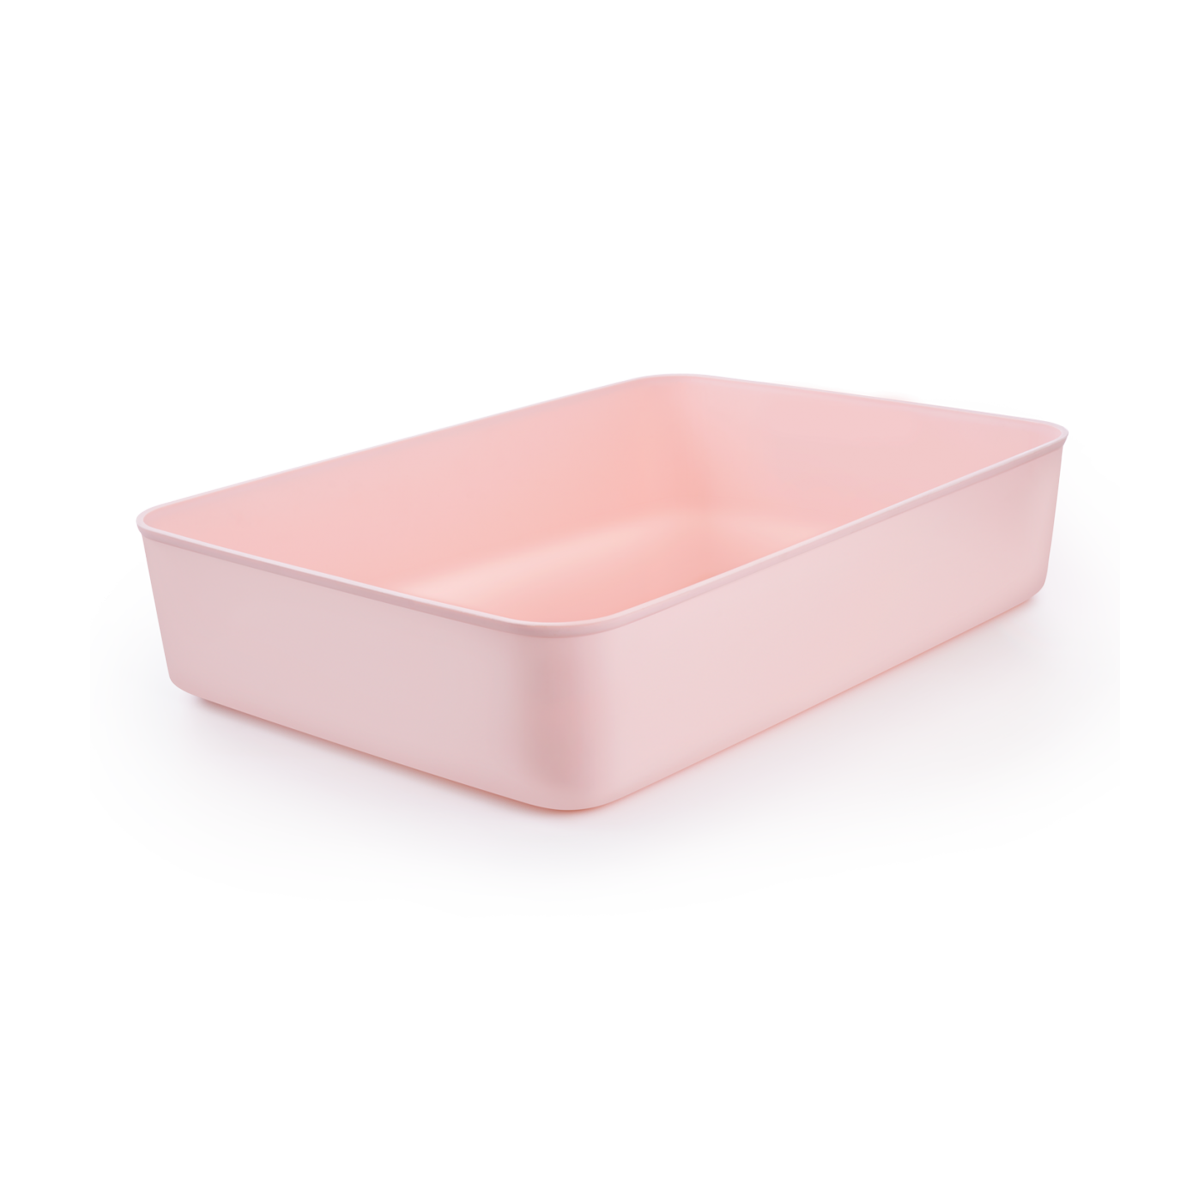 Ящик для хранения MVM пластиковый розовый 80x257x360 FH-12 L LIGHT PINK